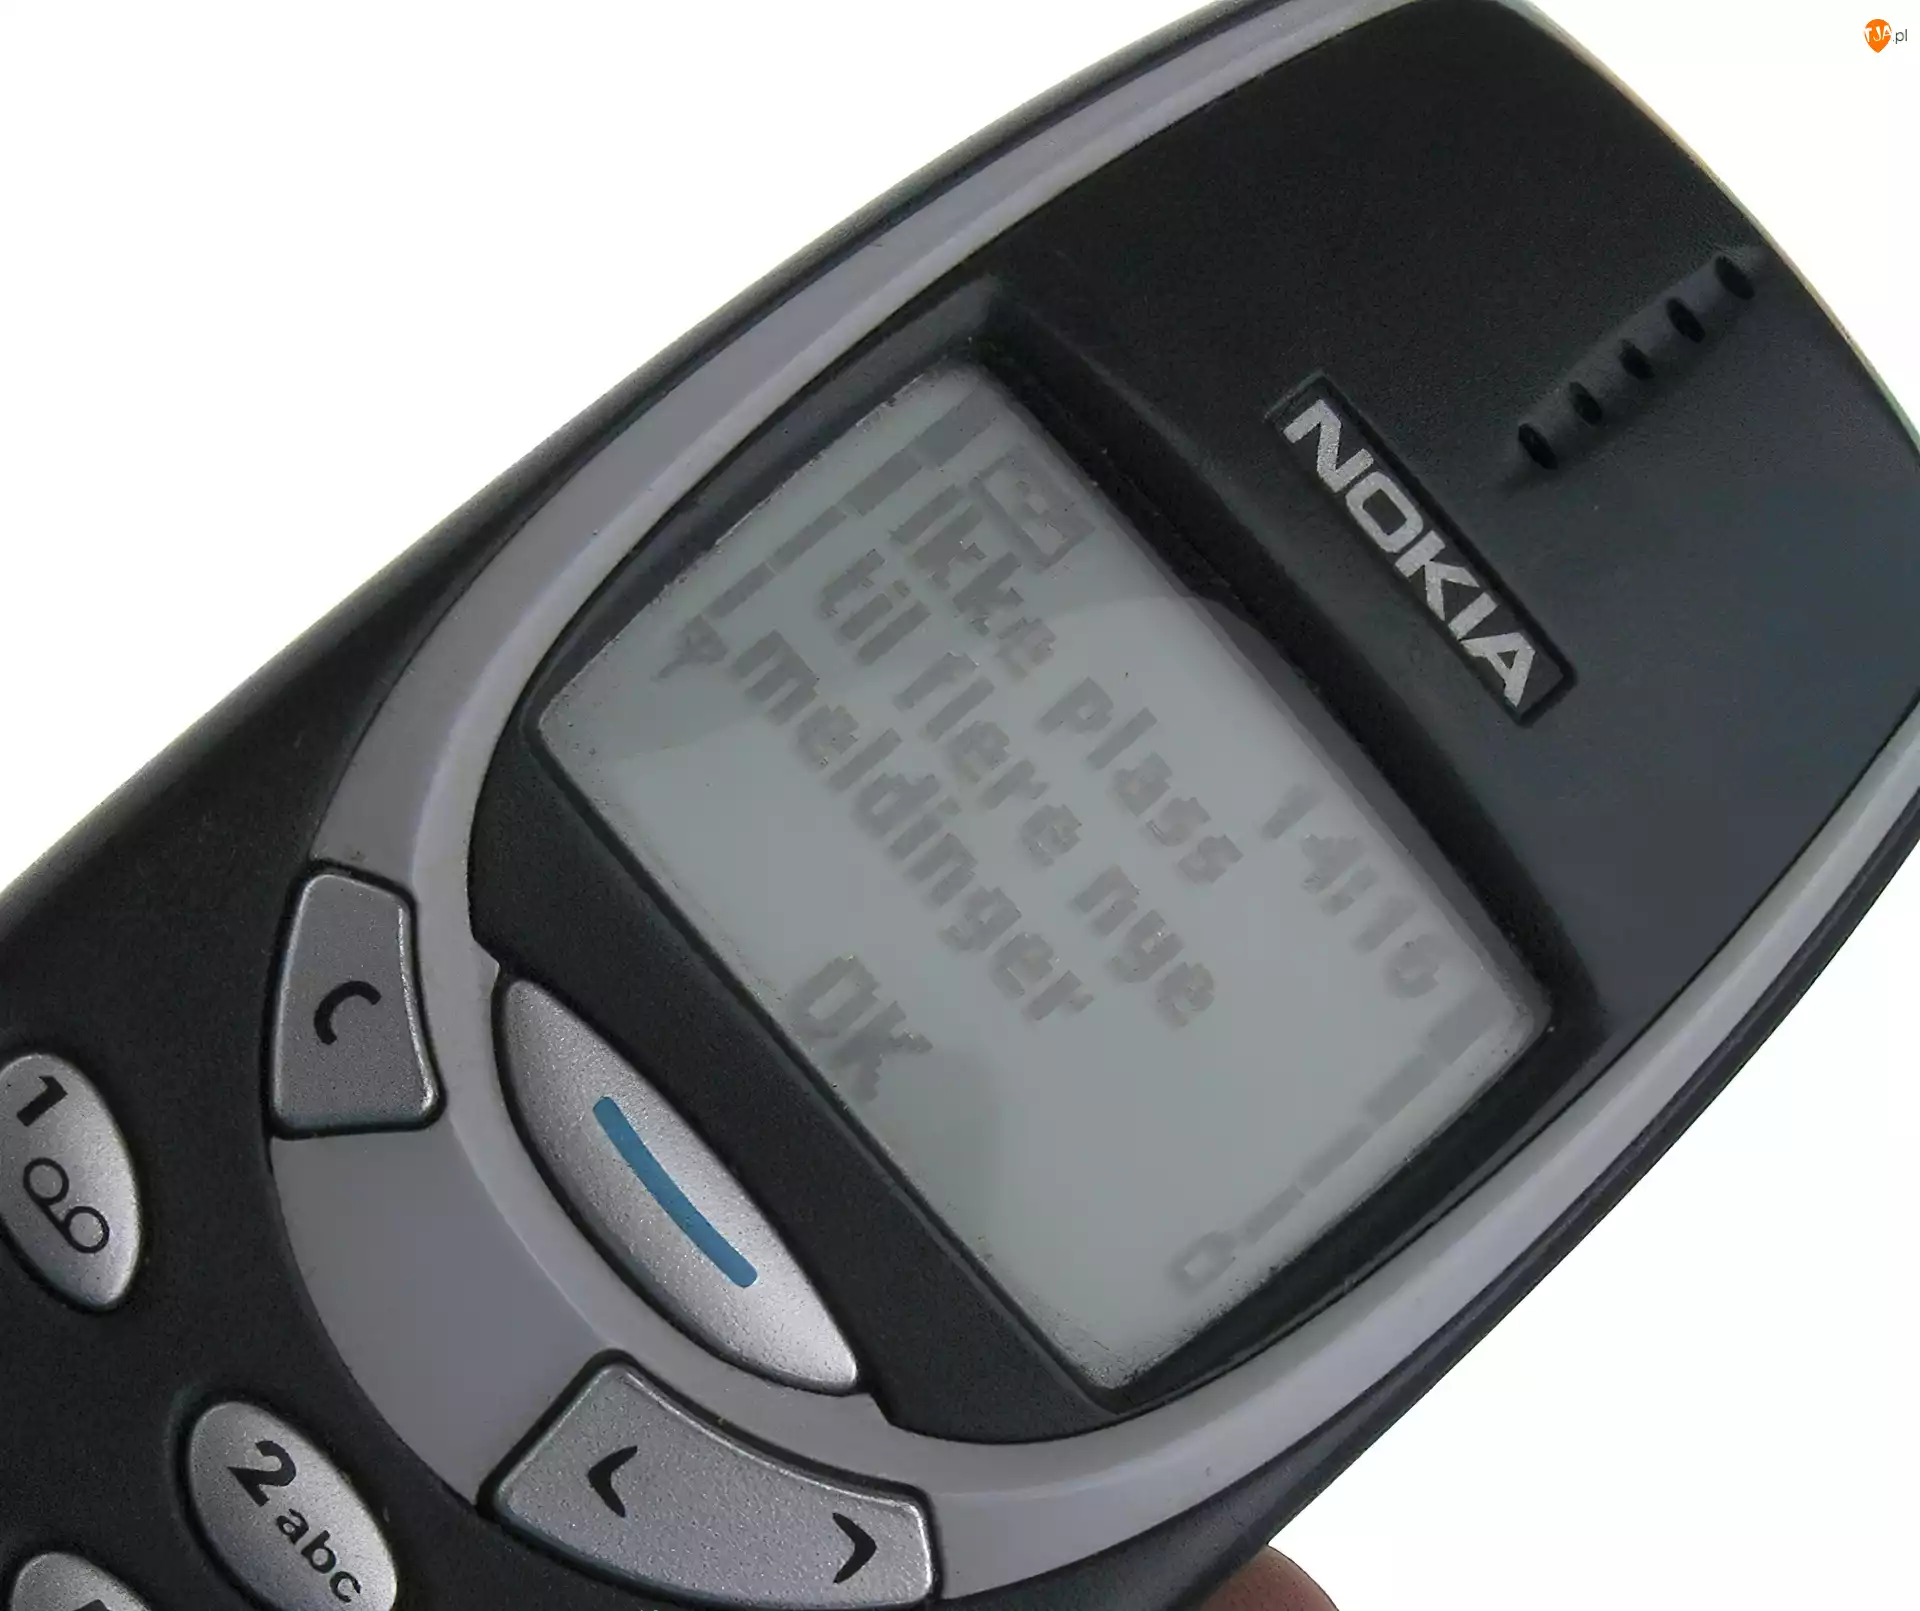 SMS, Nokia 3310